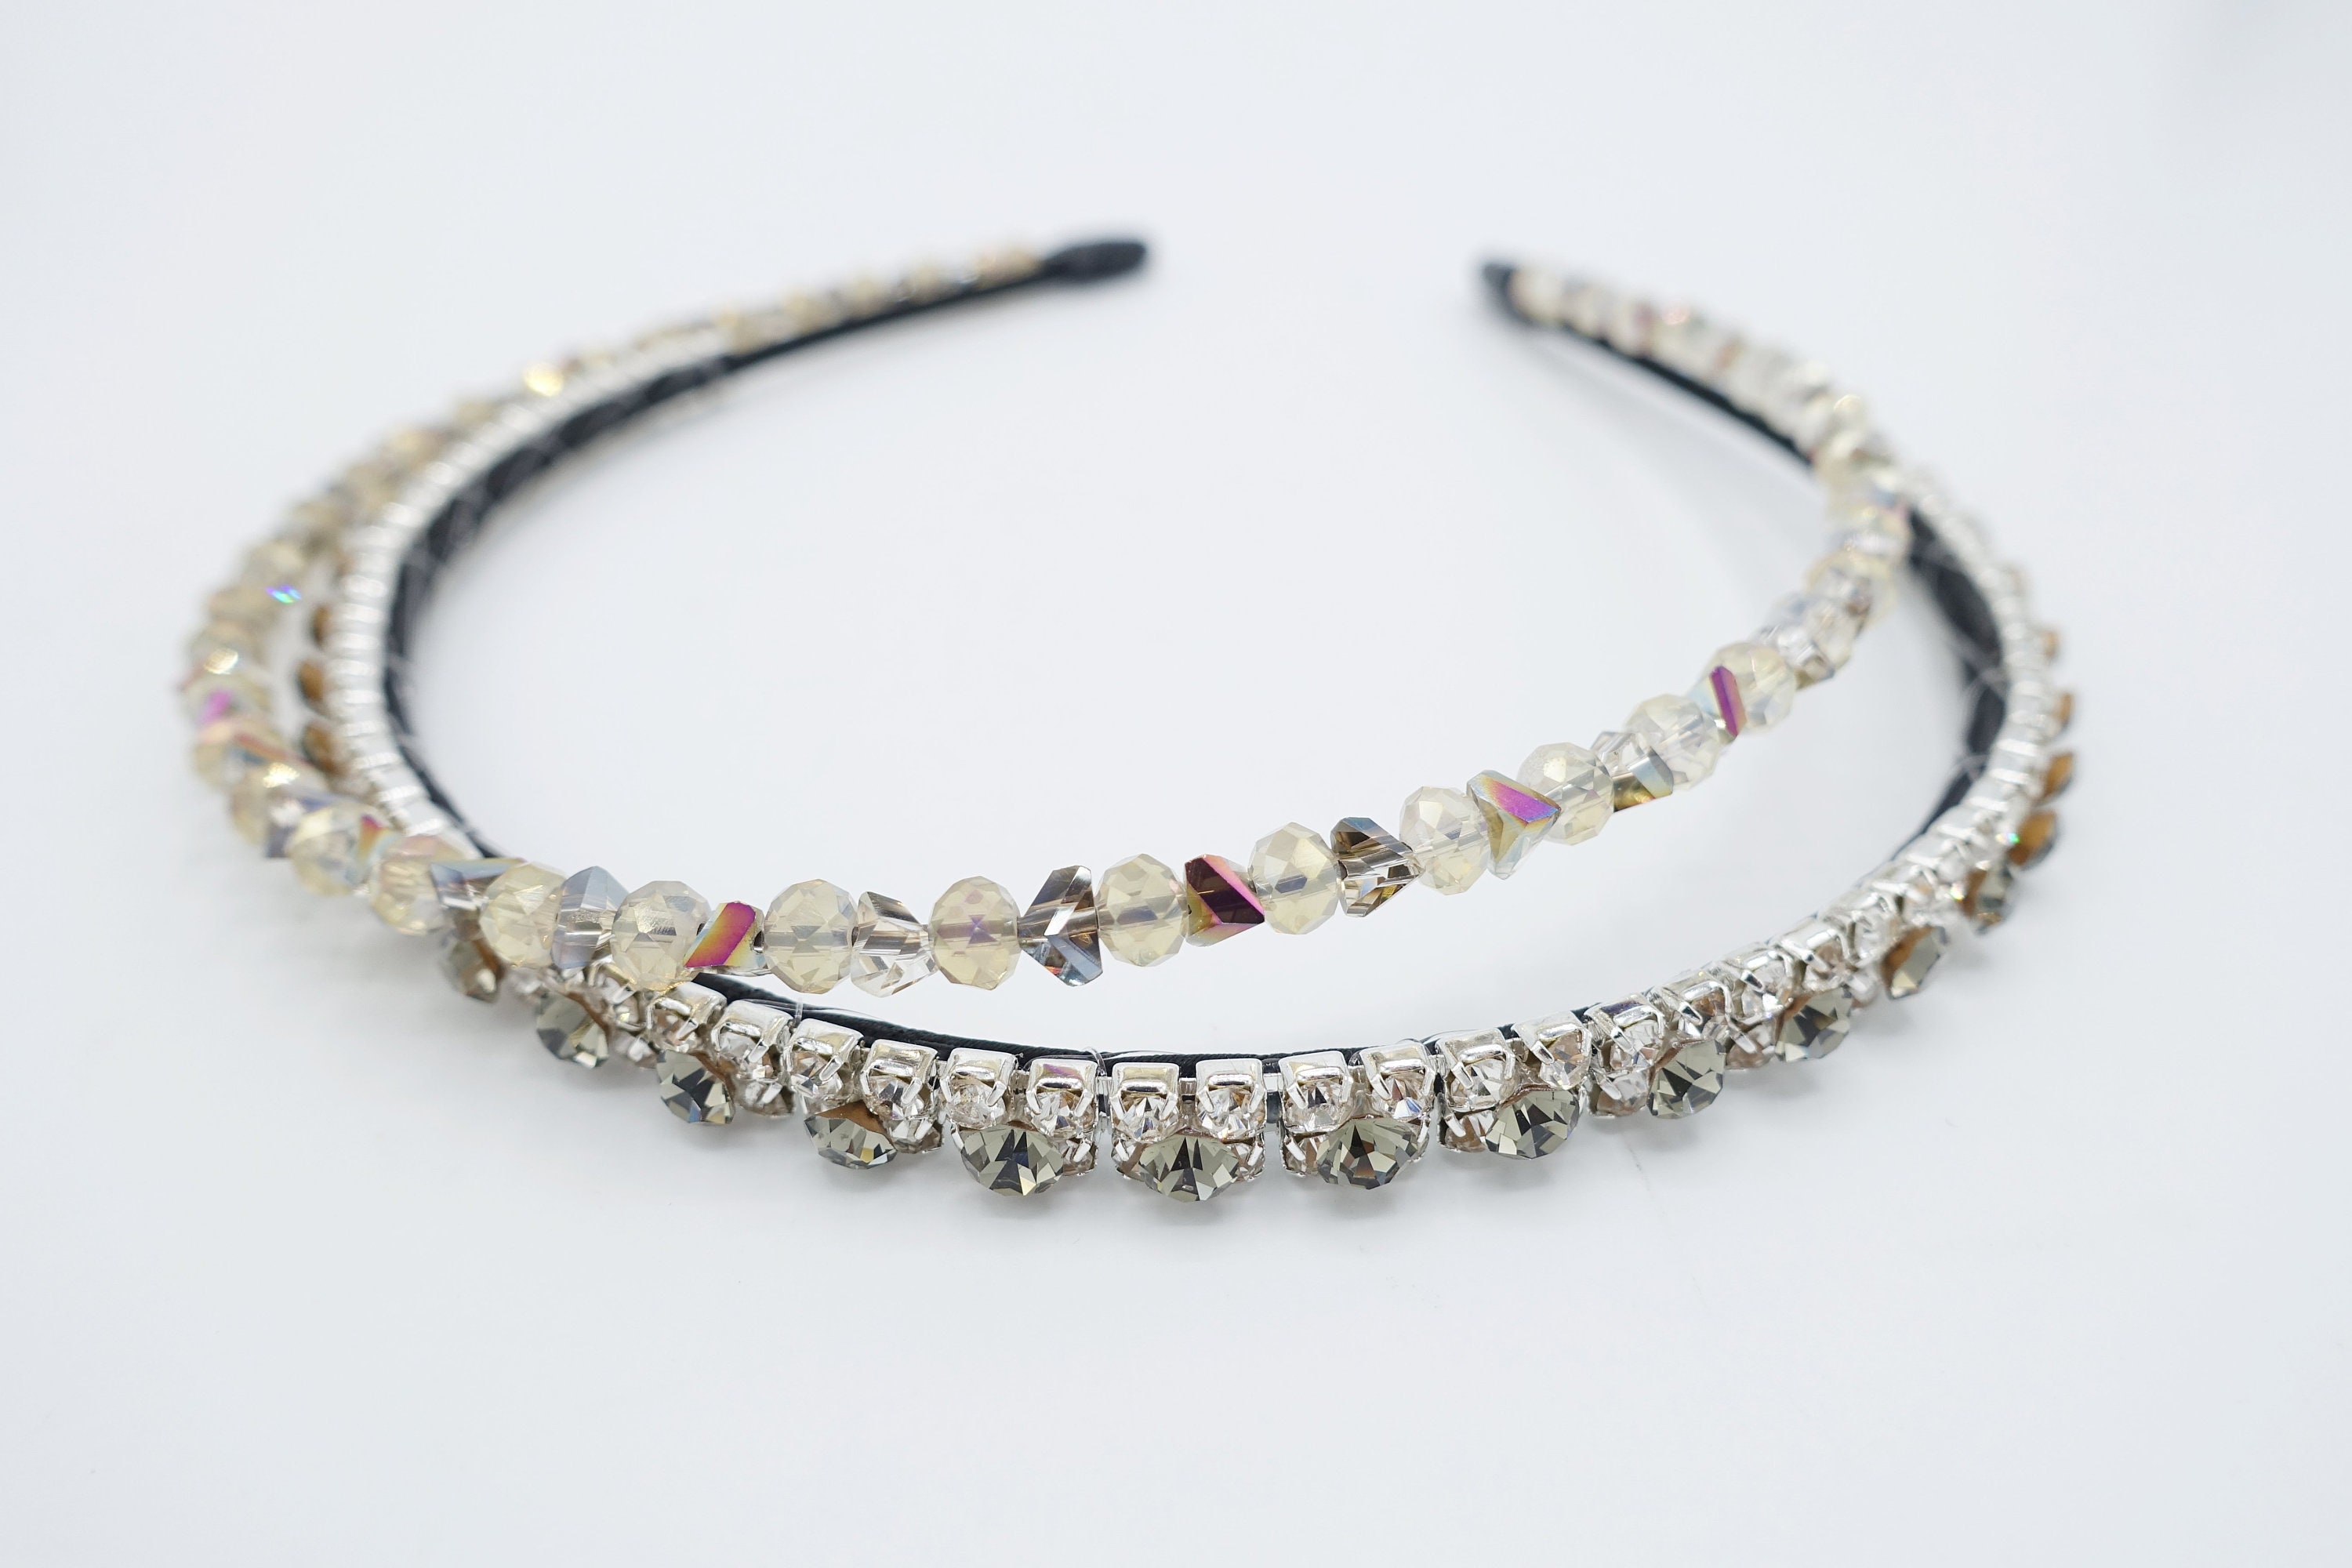 Jeweled double headband rhinestone crystal embellished | Etsy